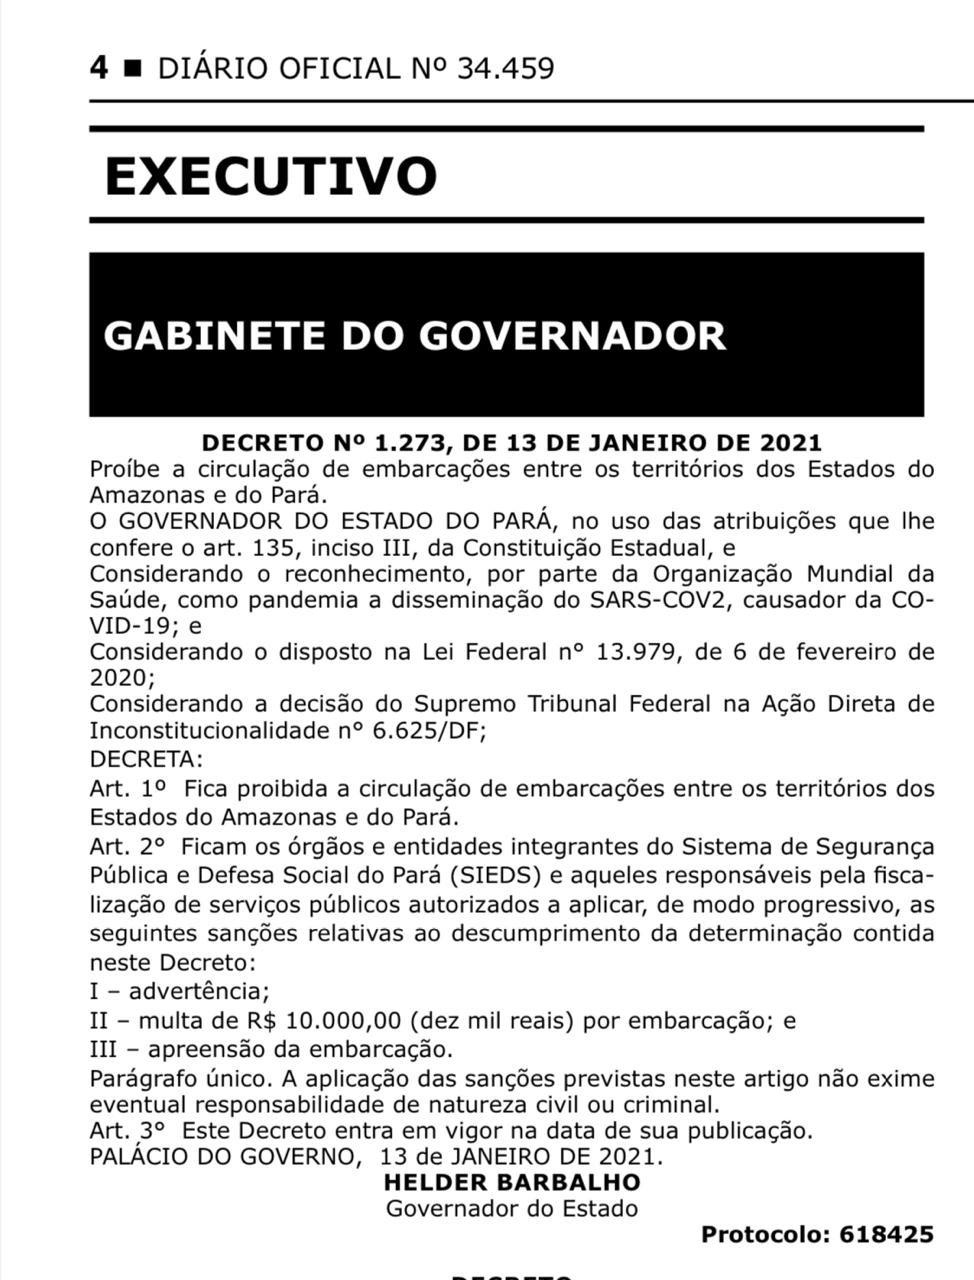 Decreto do governador do Pará